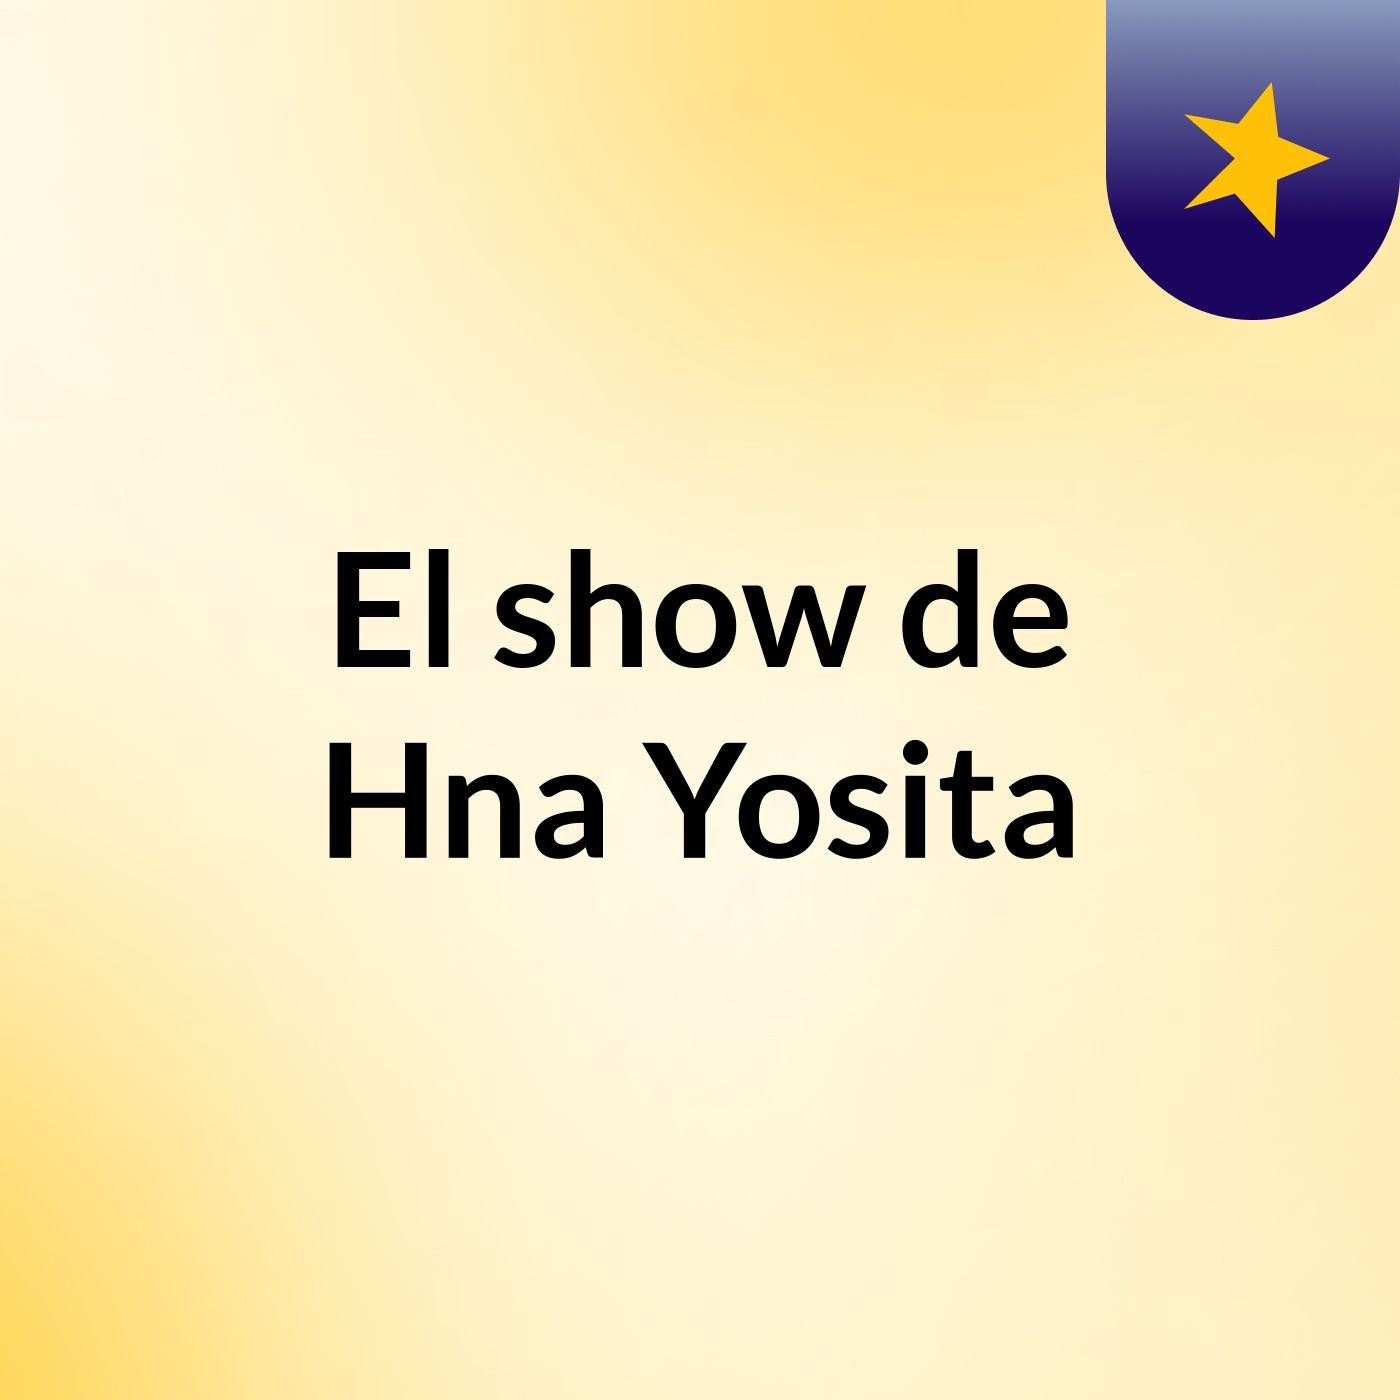 El show de Hna Yosita